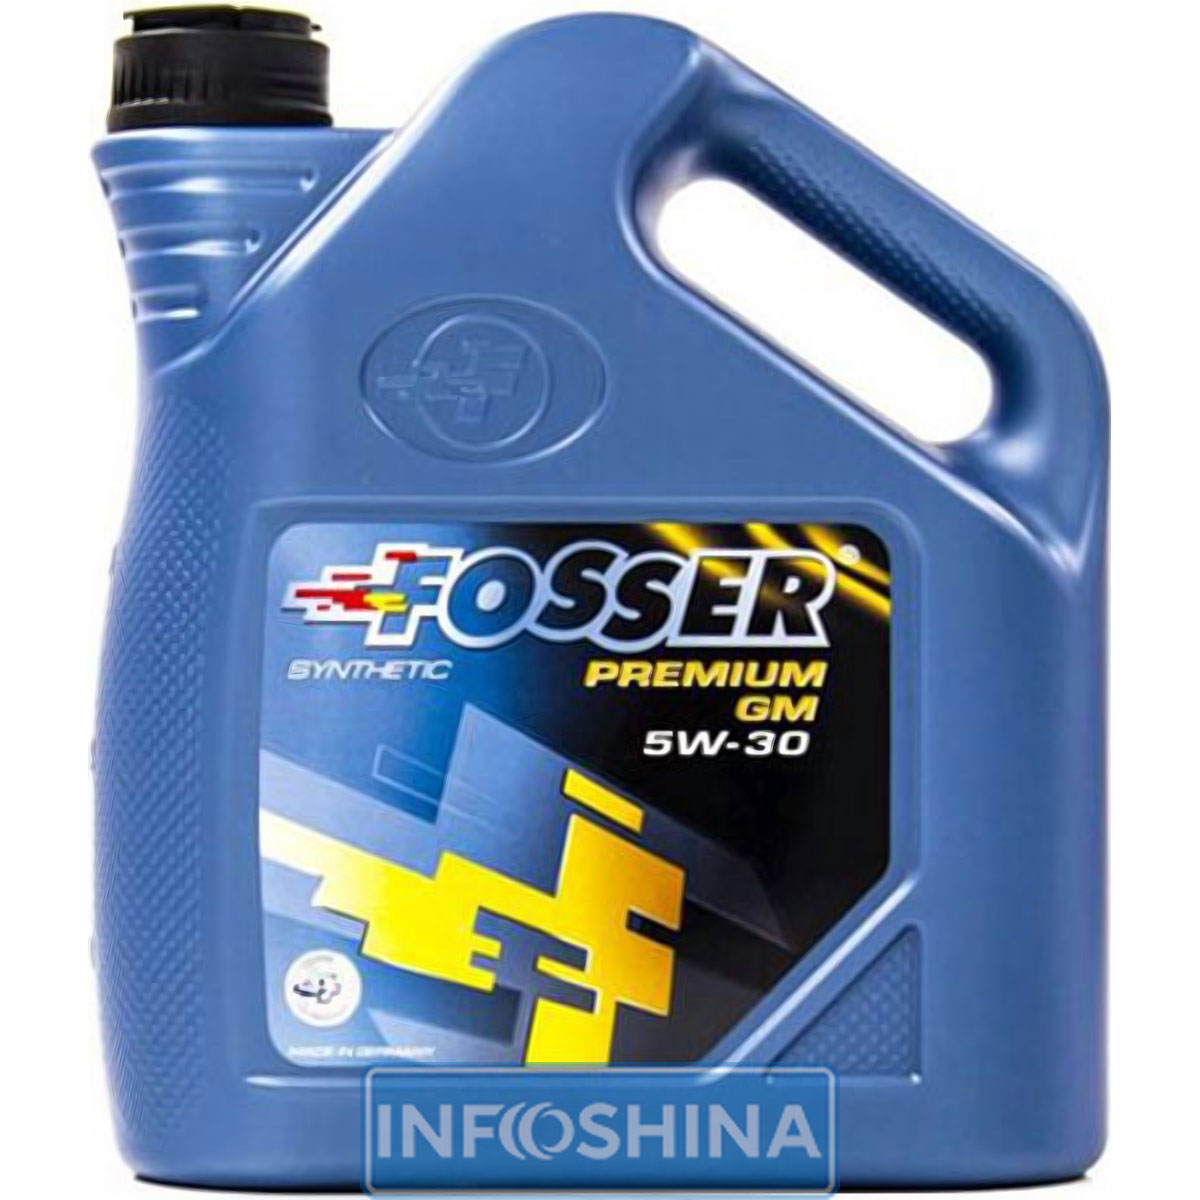 Fosser Premium GM 5W-30